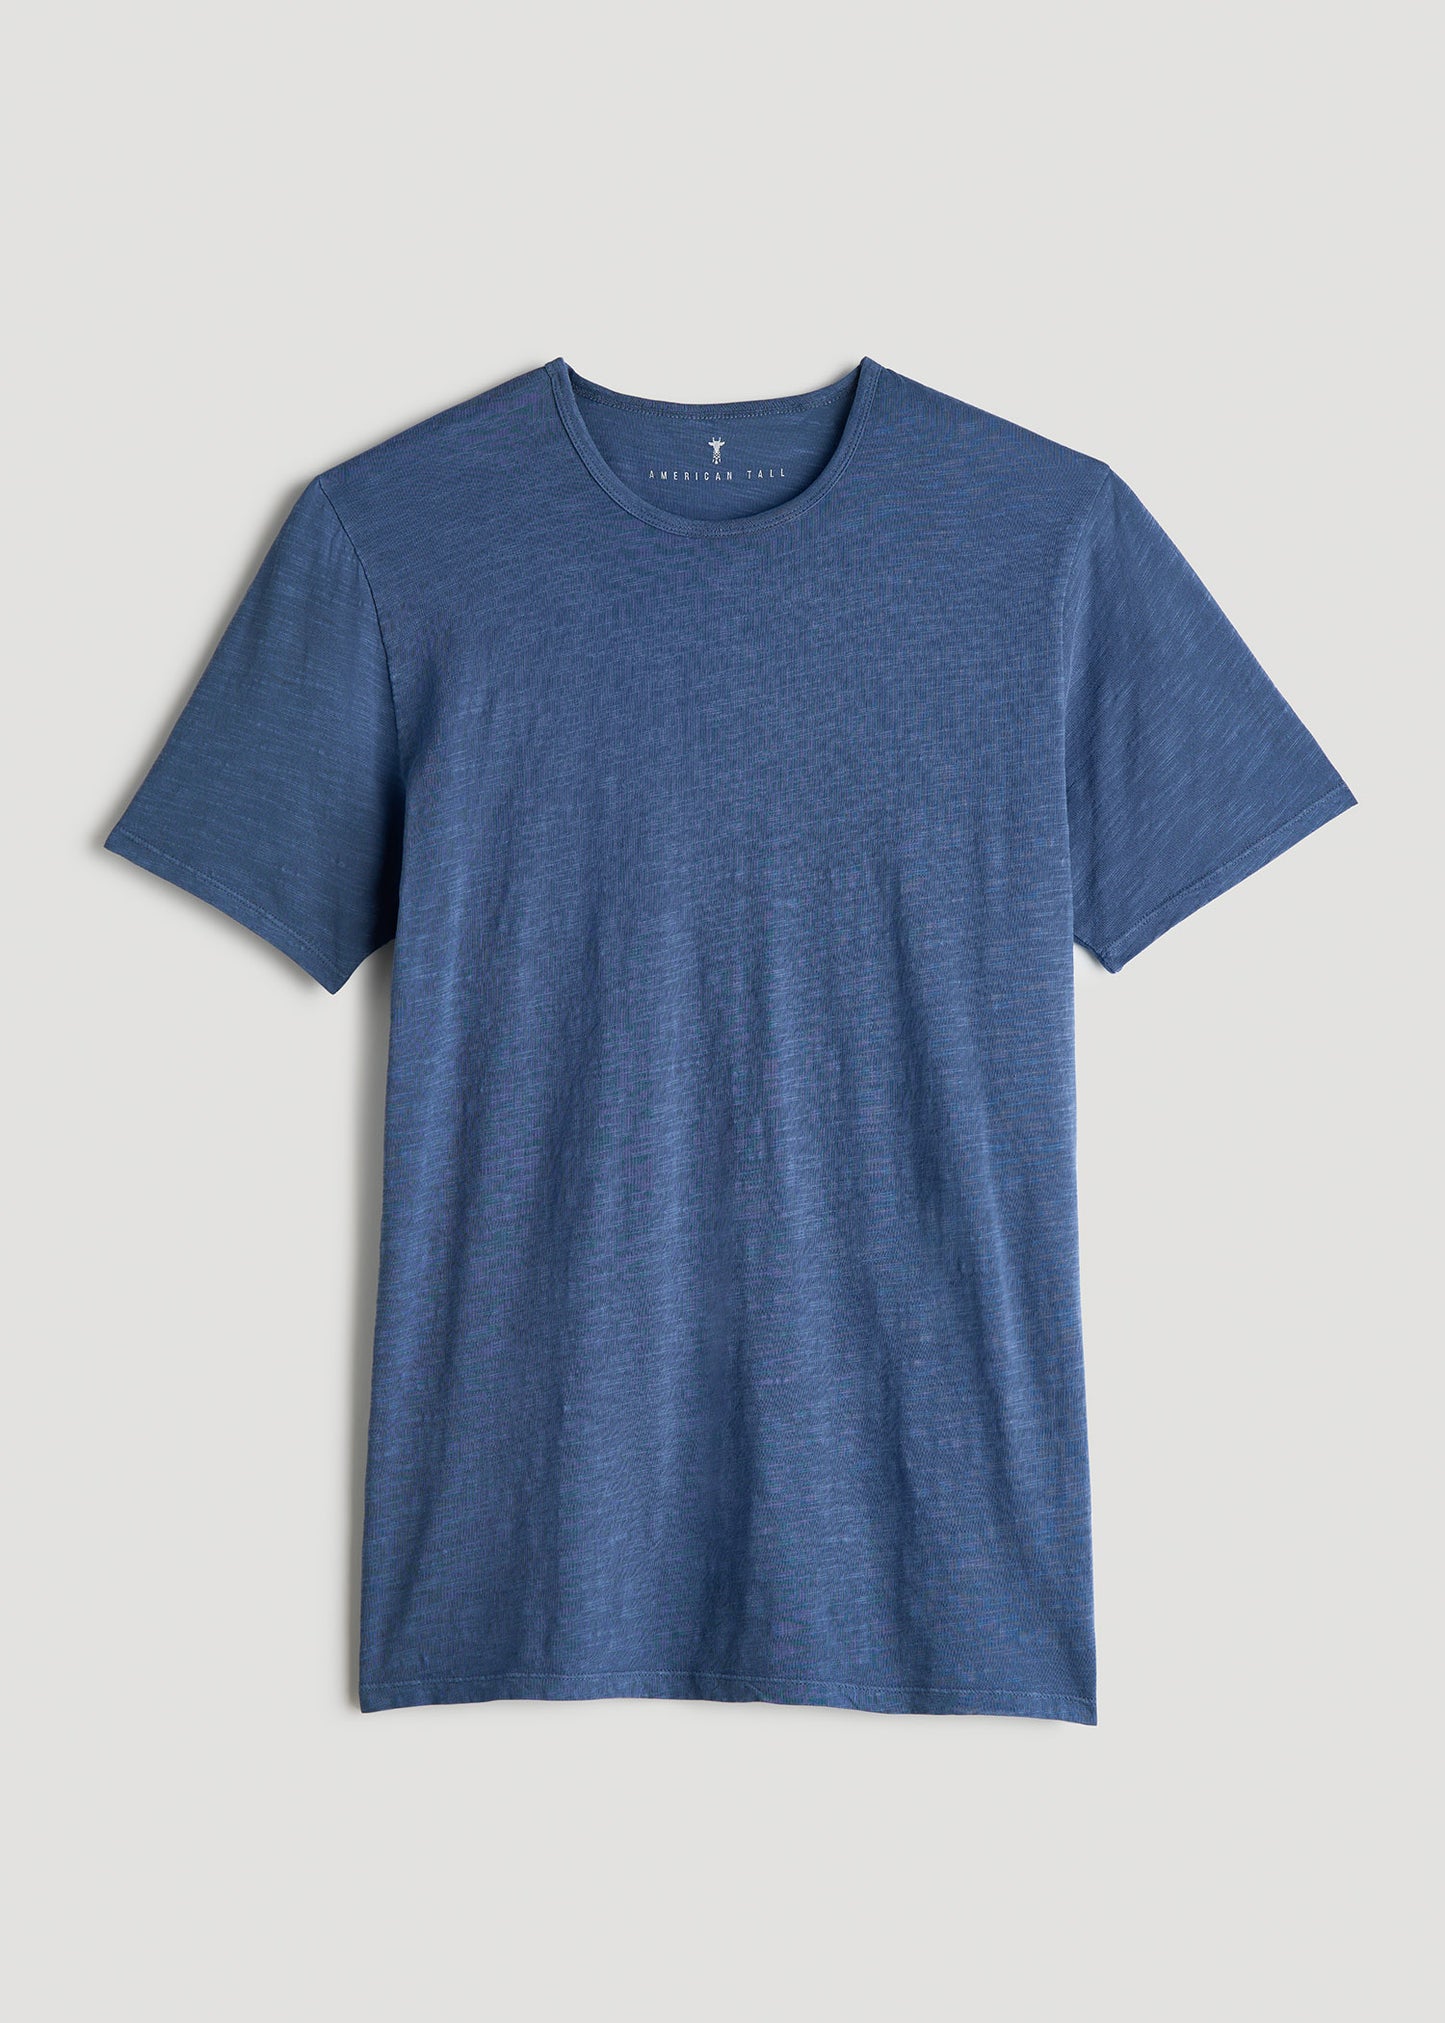 REGULAR-FIT Slub Tee in Grey Blue - Tall Men's Shirts